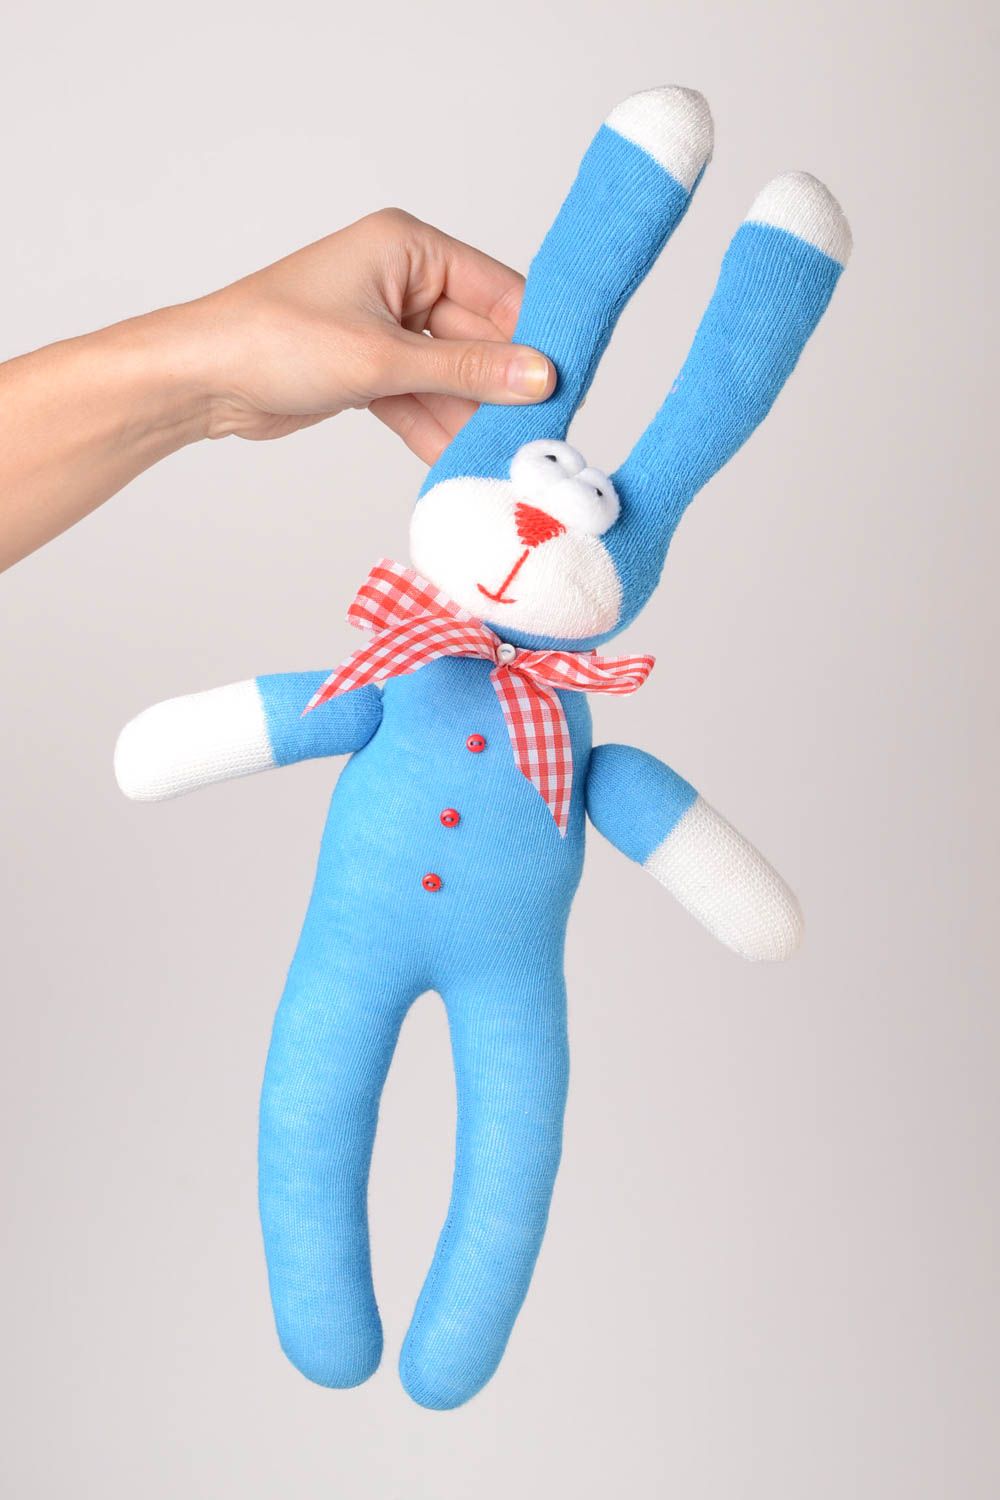 Детская игрушка ручной работы игрушка-животное мягкая игрушка голубенький зайчик фото 2